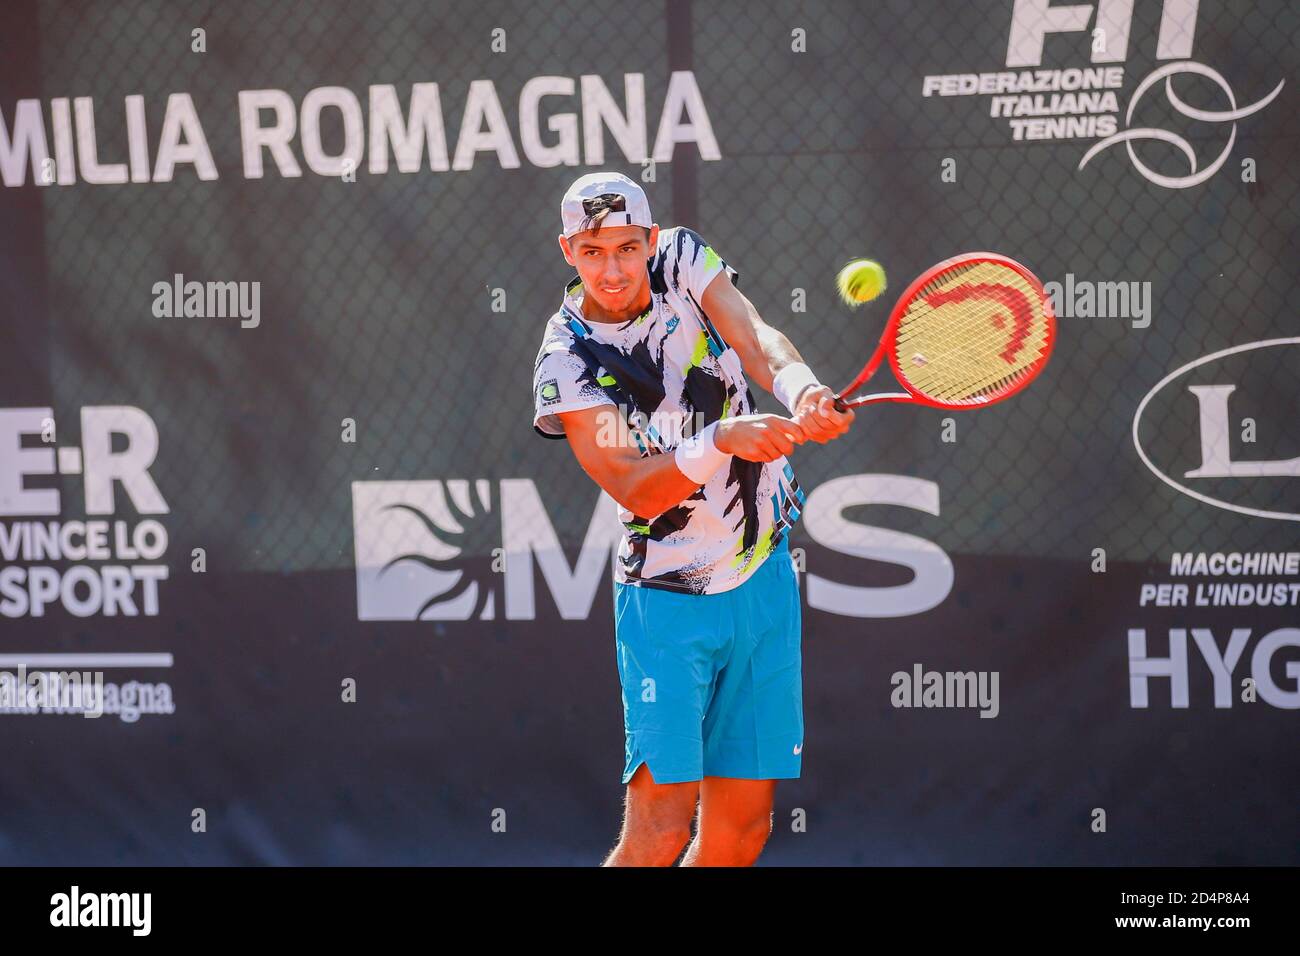 Lexei Popyrin durante l'ATP Challenger 125 - internazionali Emilia Romagna, Tennis internazionali, parma, Italia, 09 Oct 2020 Credit: LM/Roberta Corradin Foto Stock